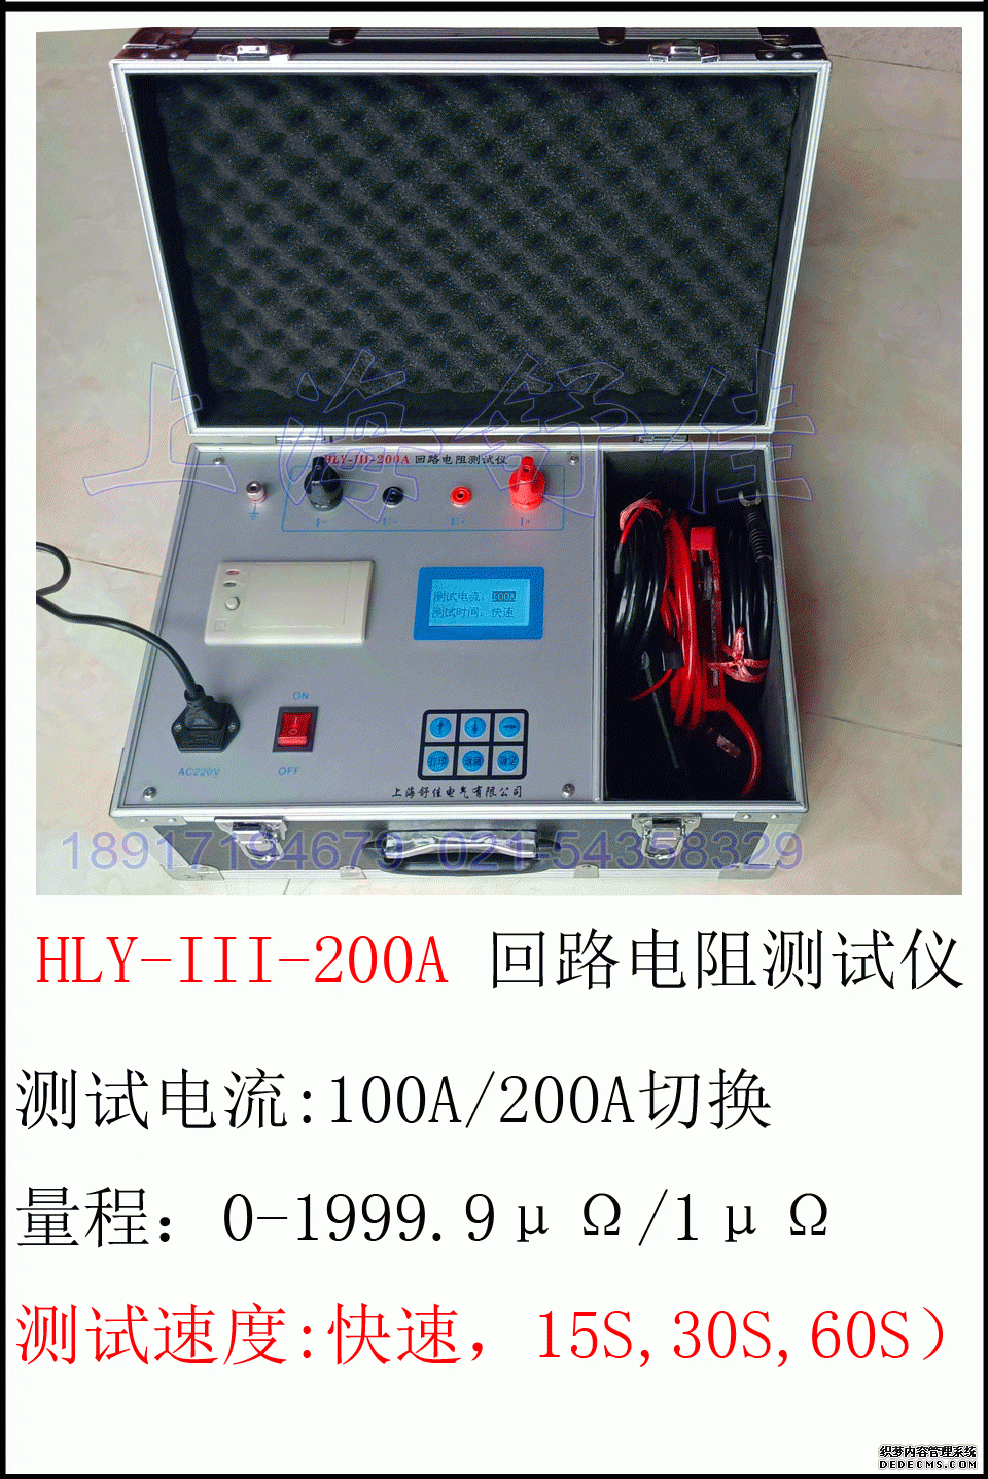 HLY-III-200A 智 能 型 回 路 电 阻 测 试 仪 